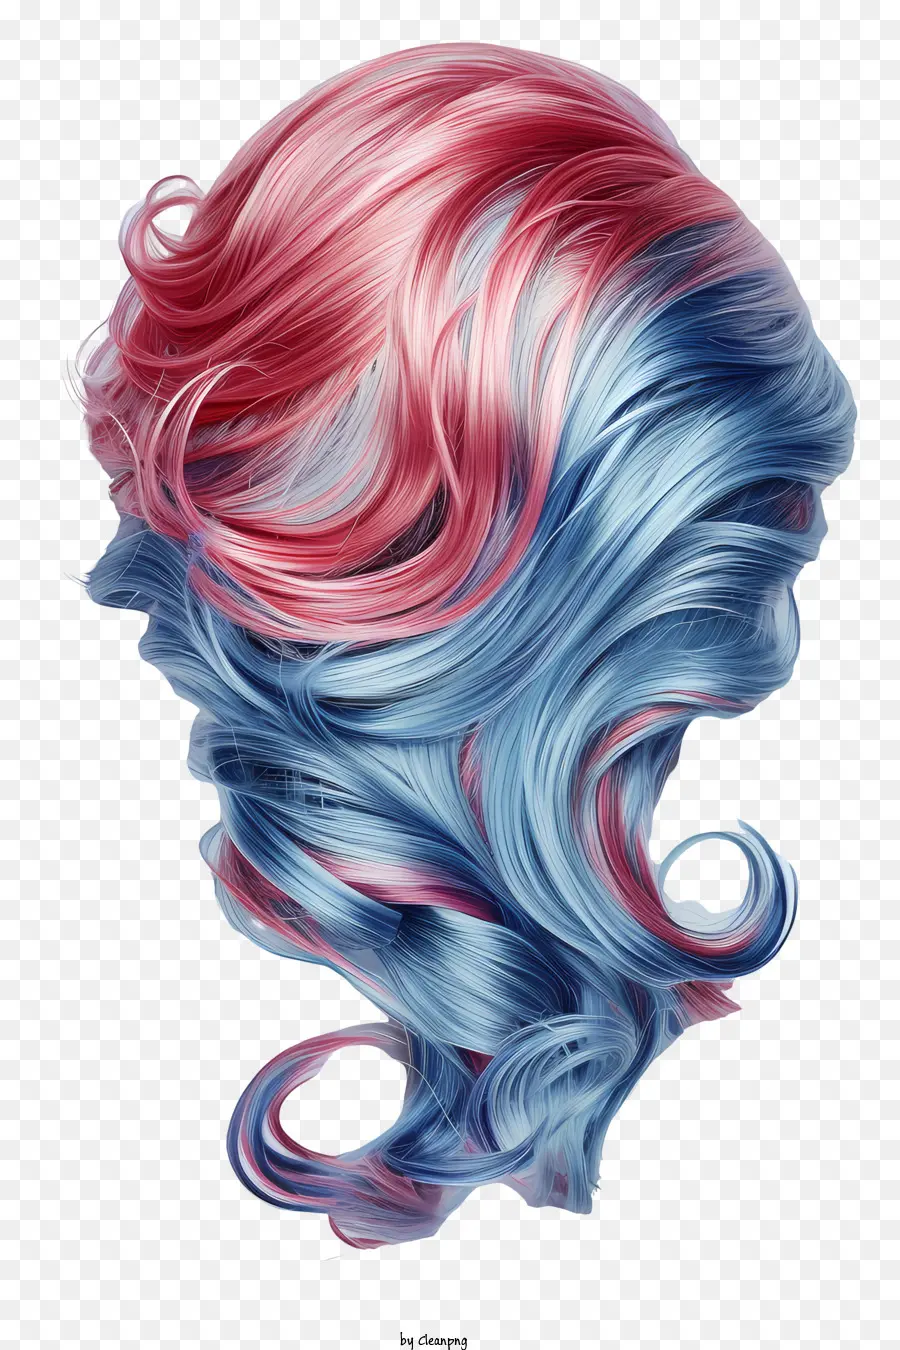 Perücke, welliges farbiges Haar hellblaues und rotes Haar dunkelbraune Basisfarbe langer Wellenfrisur - Frau mit hellblauem und rotem, welligem Haar